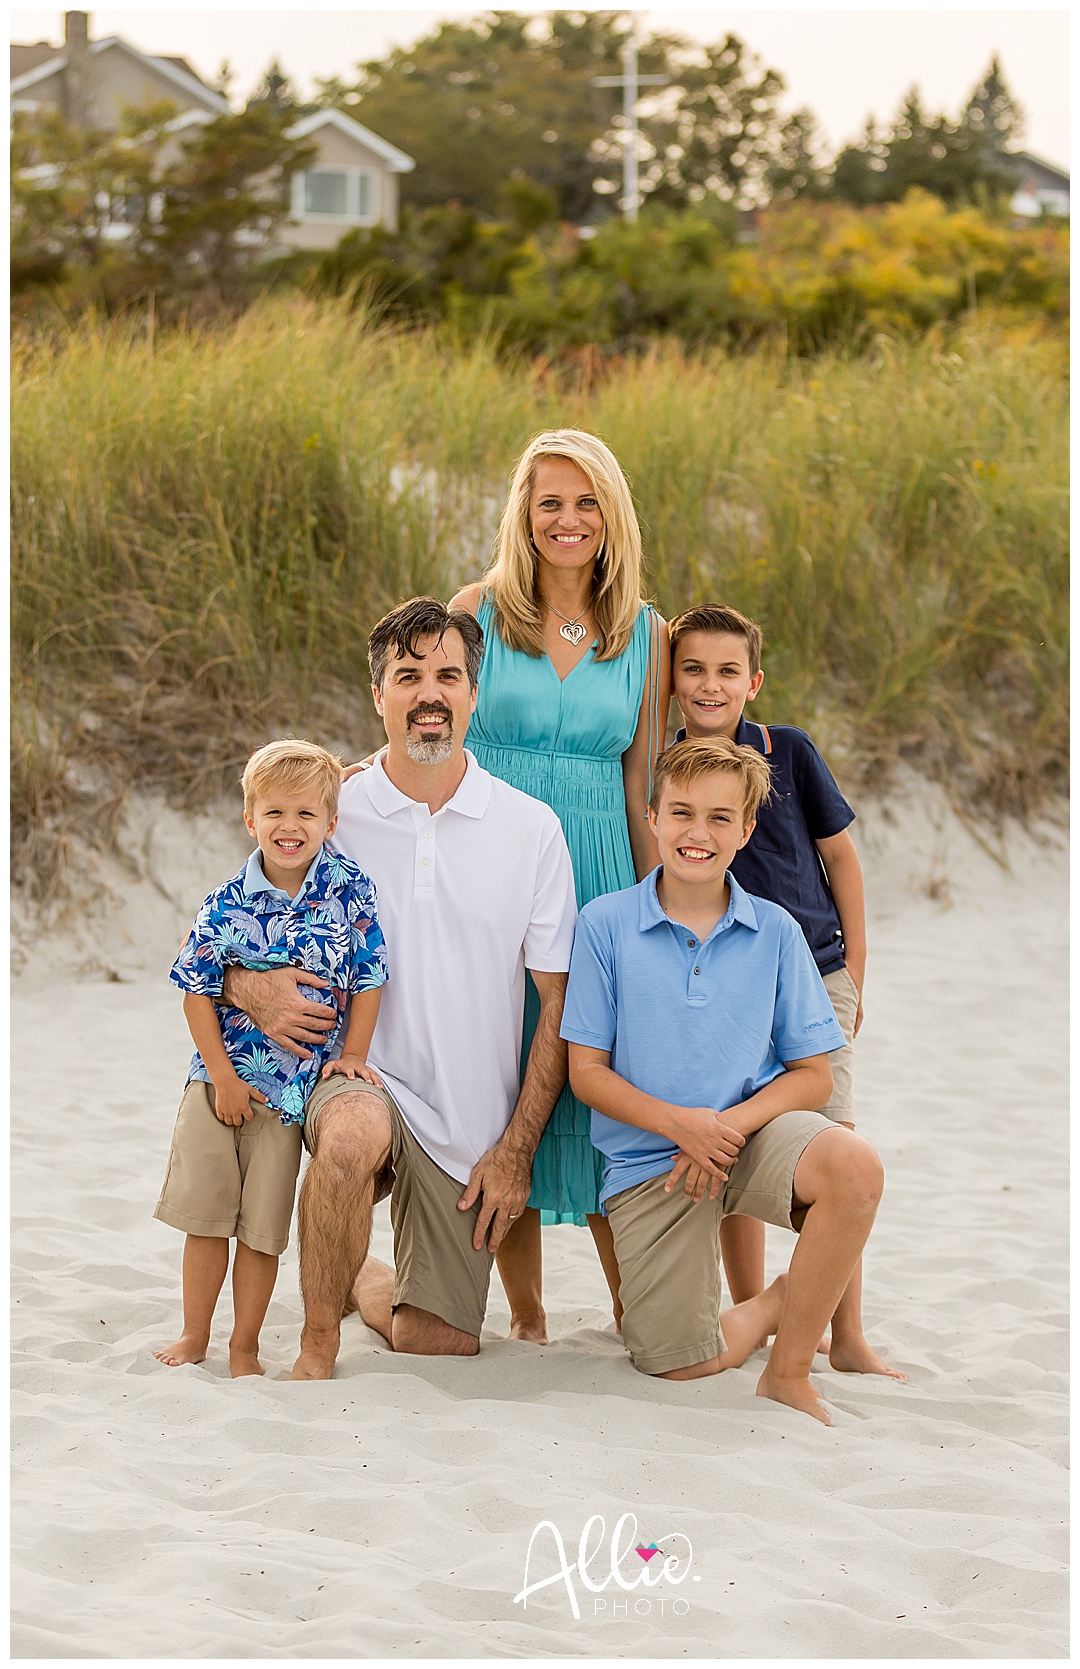 wingearsheek beach family photographer boston area Massachusetts